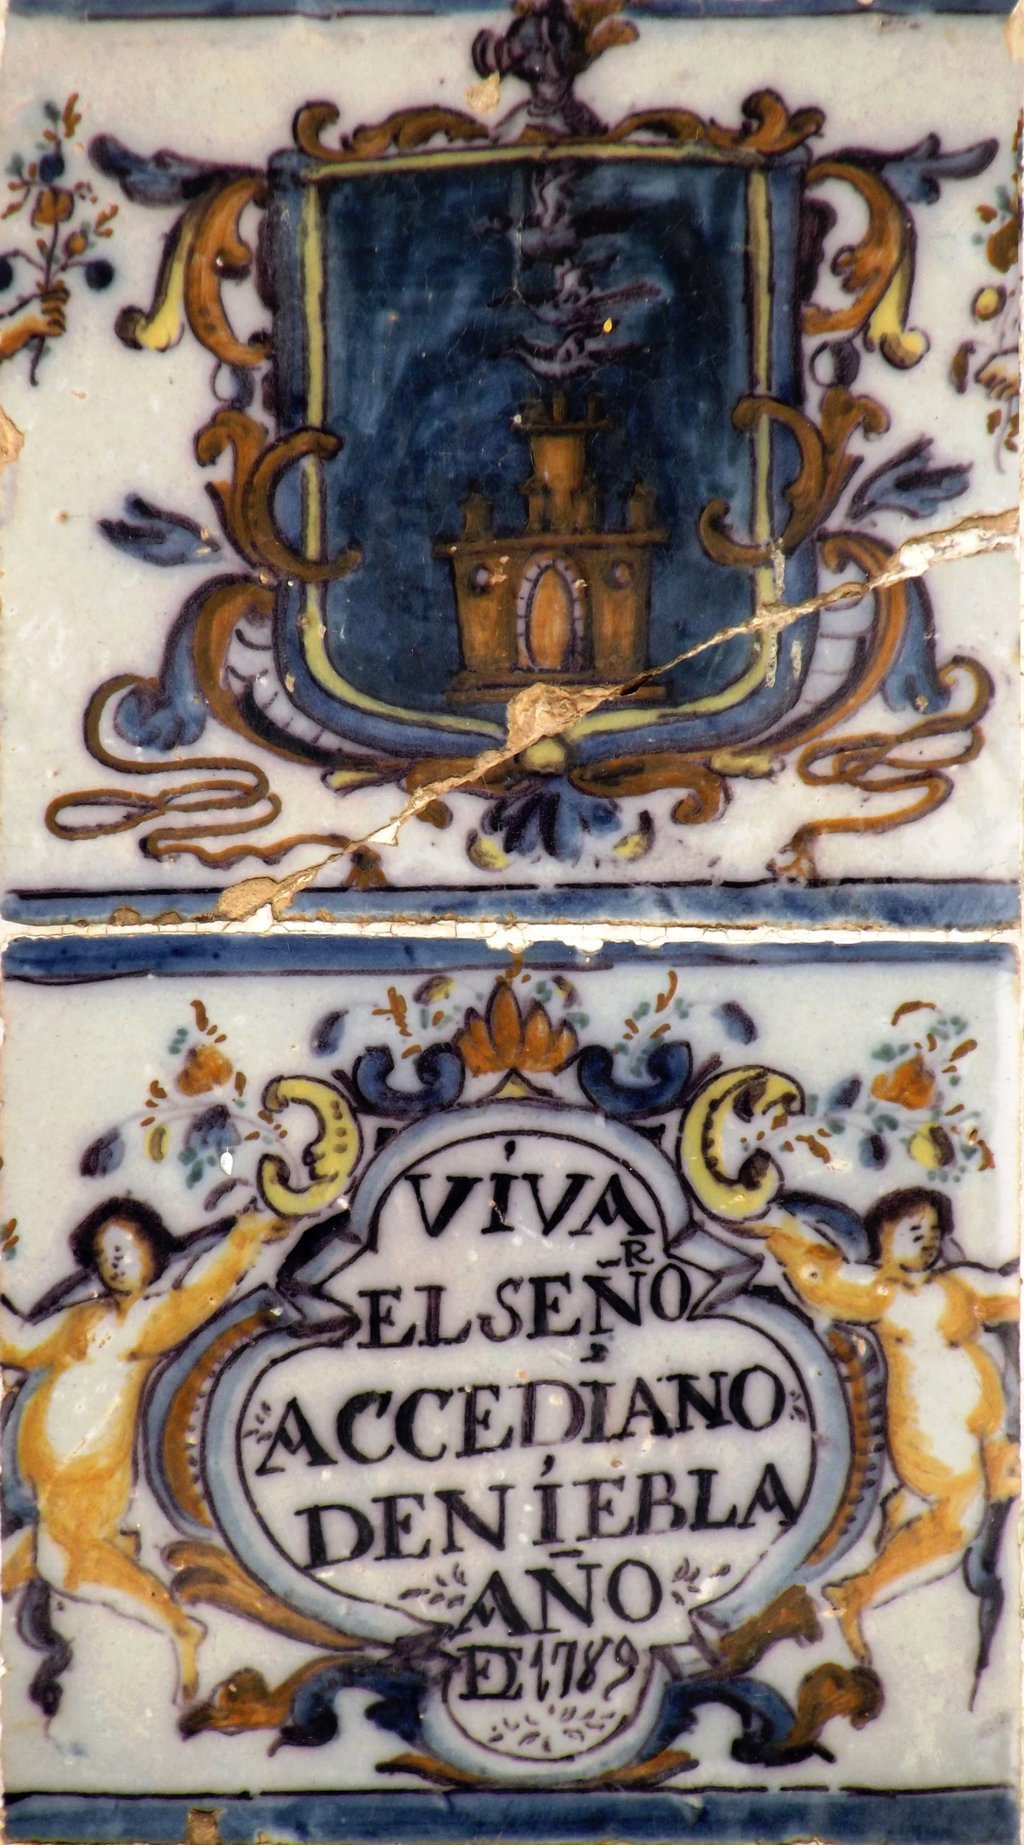 02788. Heráldica y vítor de arcediano de Niebla. Villanueva del Ariscal. Sevilla.